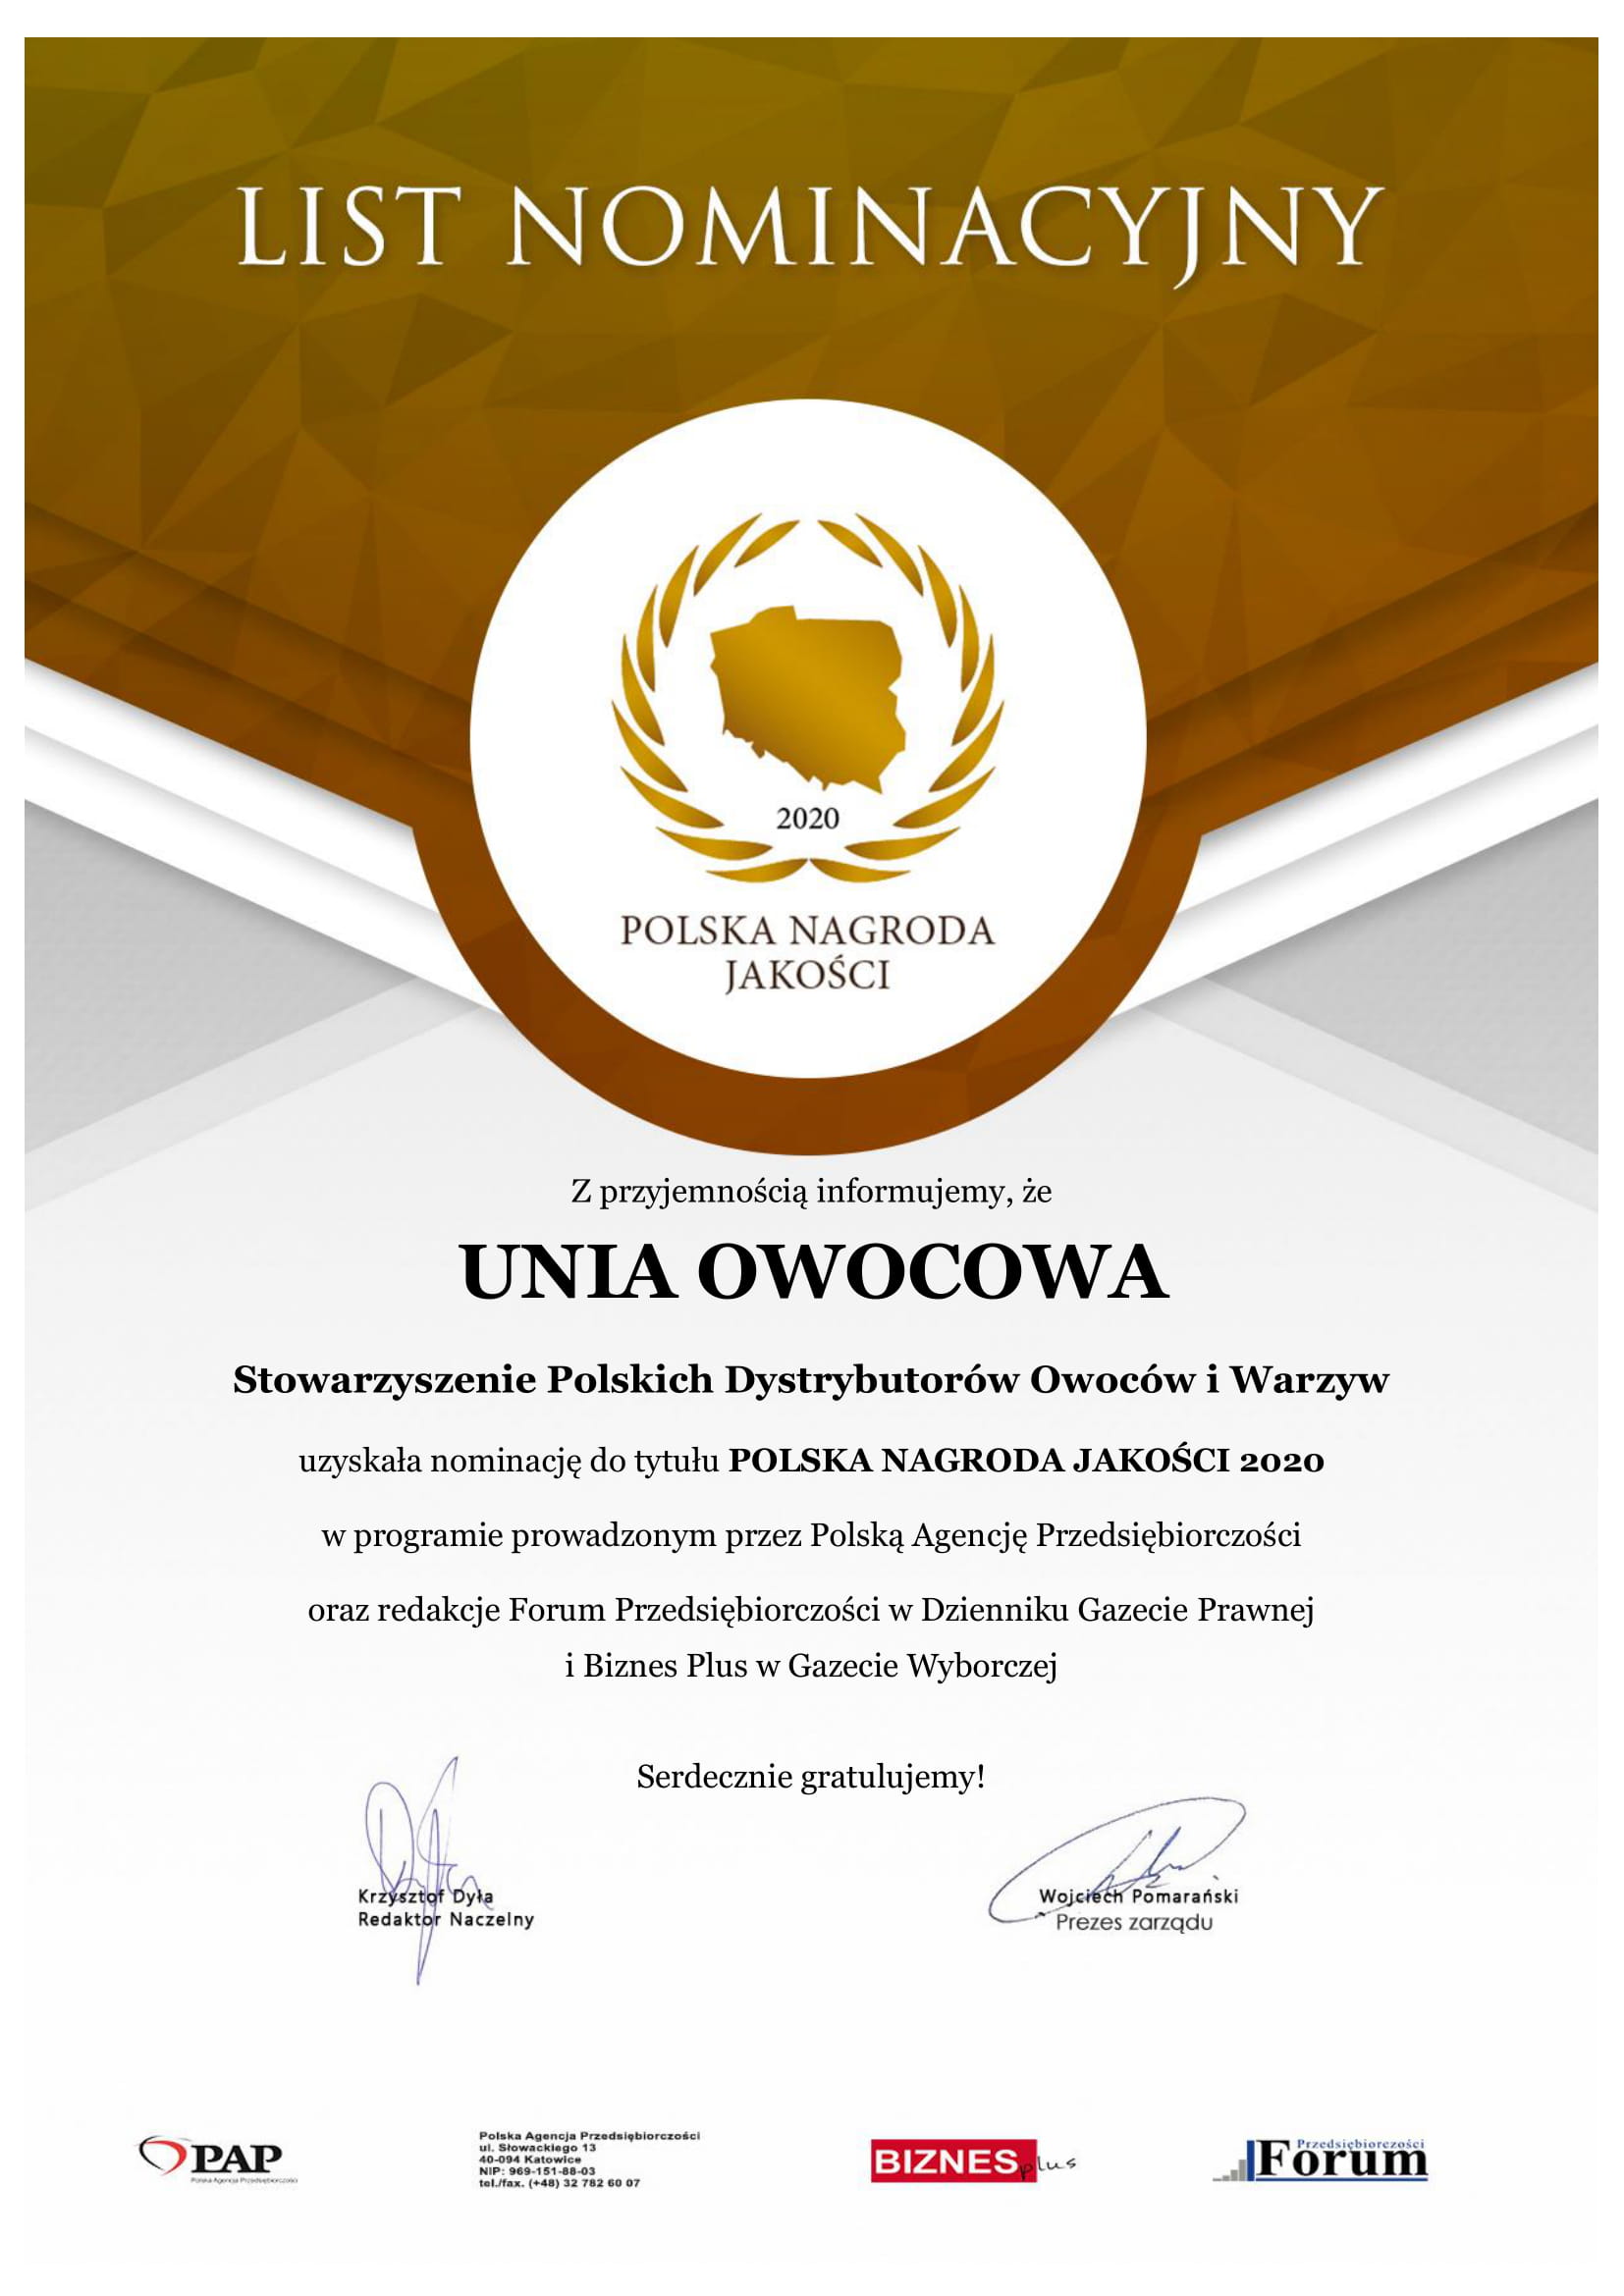 List Nominacyjny PNJ 2020 Unia Owocowa 1